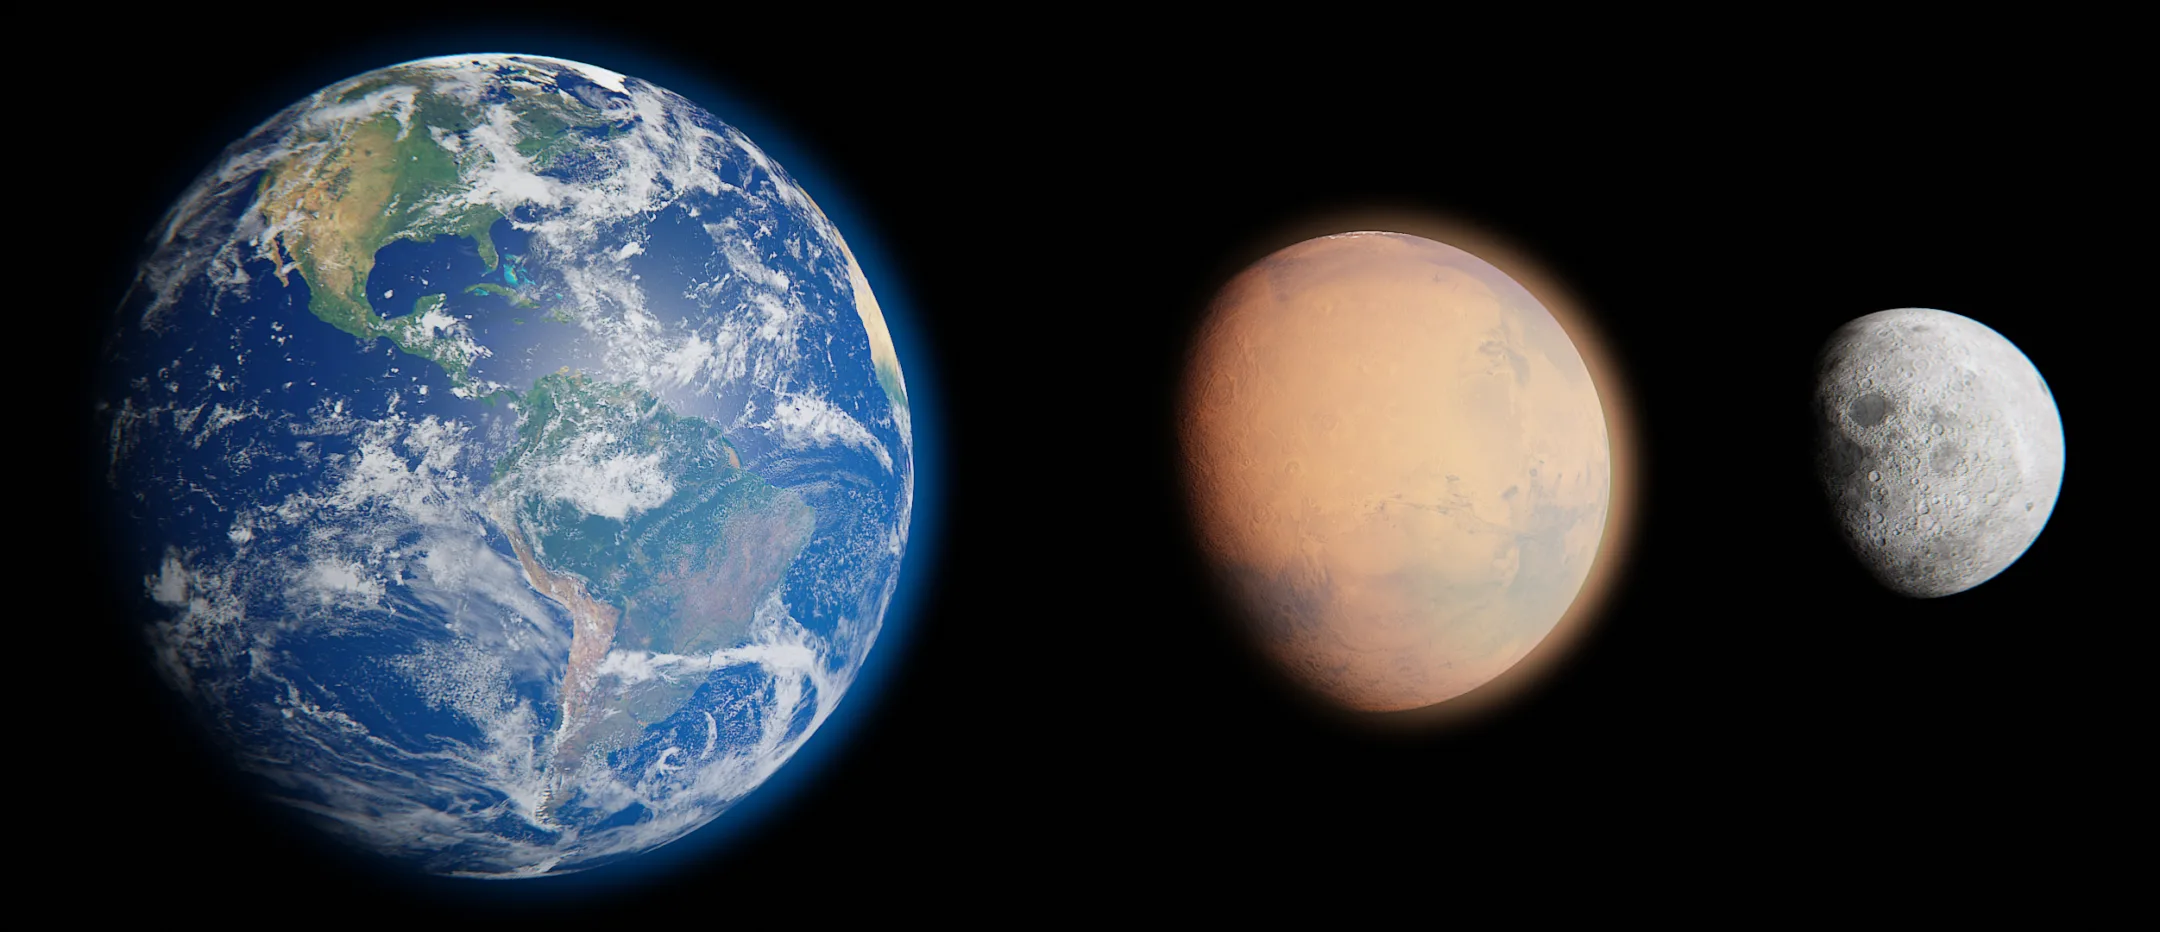 Earth, Mars, Moon (Blender Planet Model Pack)